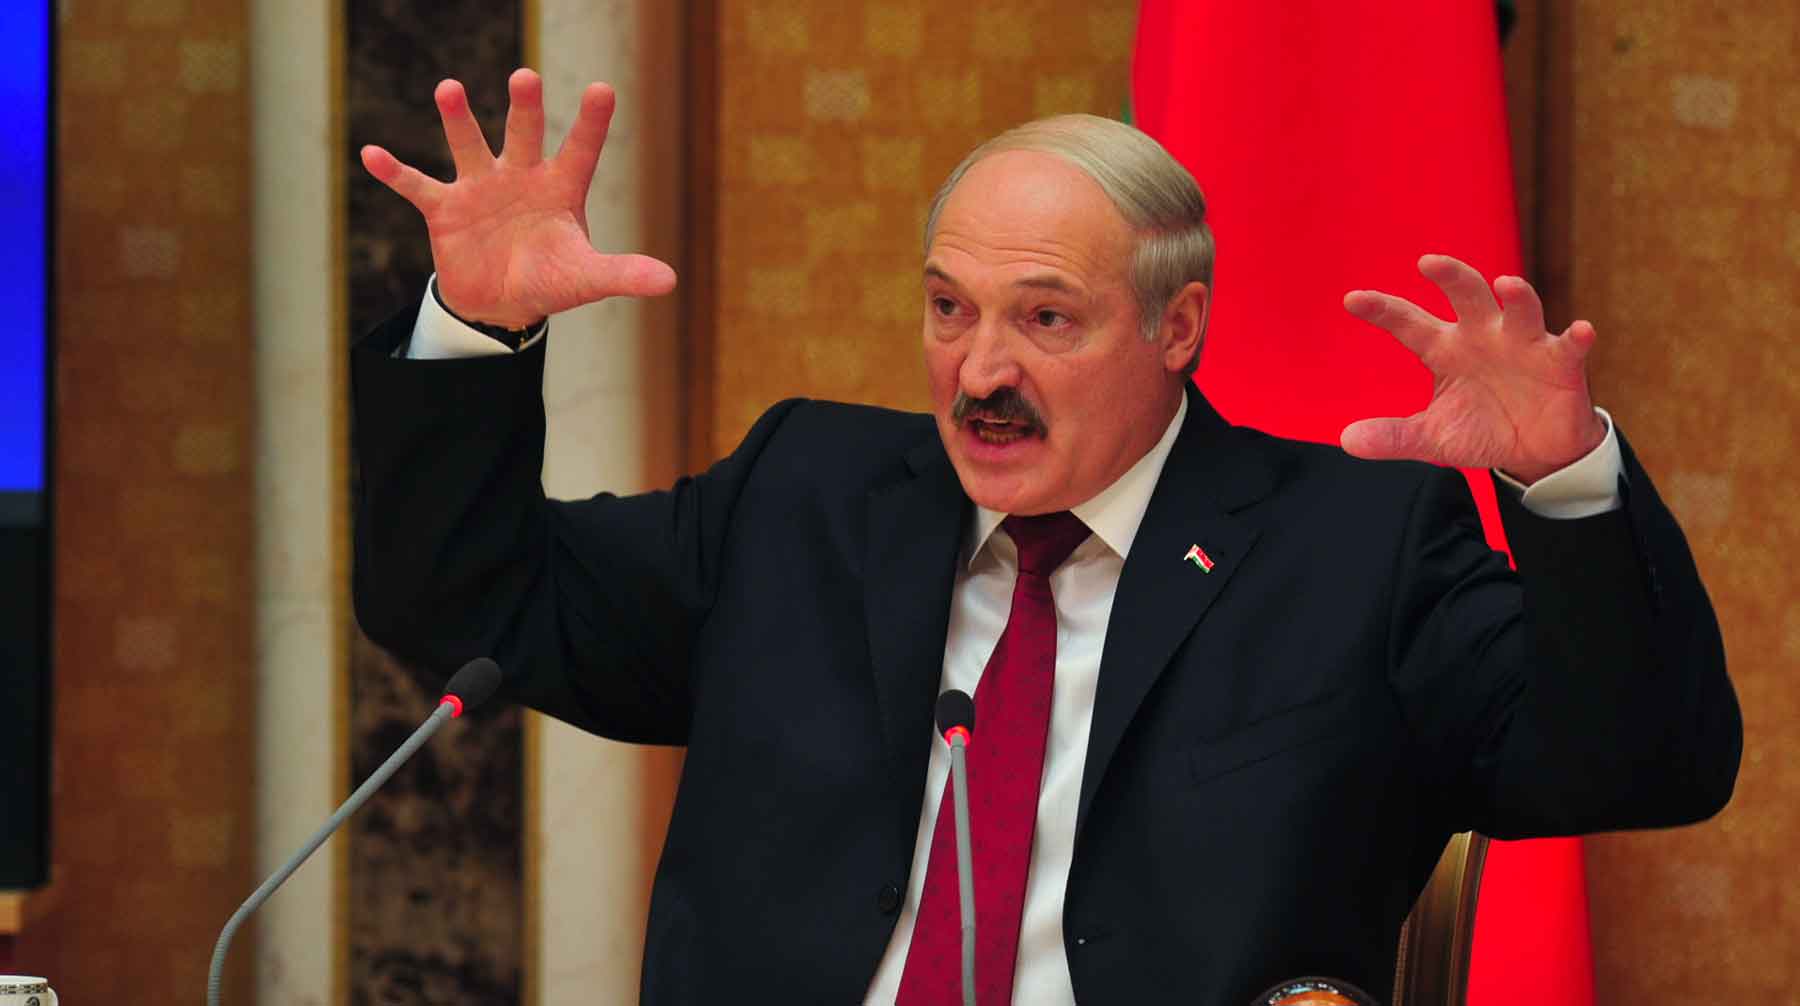 Белоруссия готова выступить связующим звеном между сторонами, заявил лидер страны Фото: © GLOBAL LOOK press / Pravda Komsomolskaya